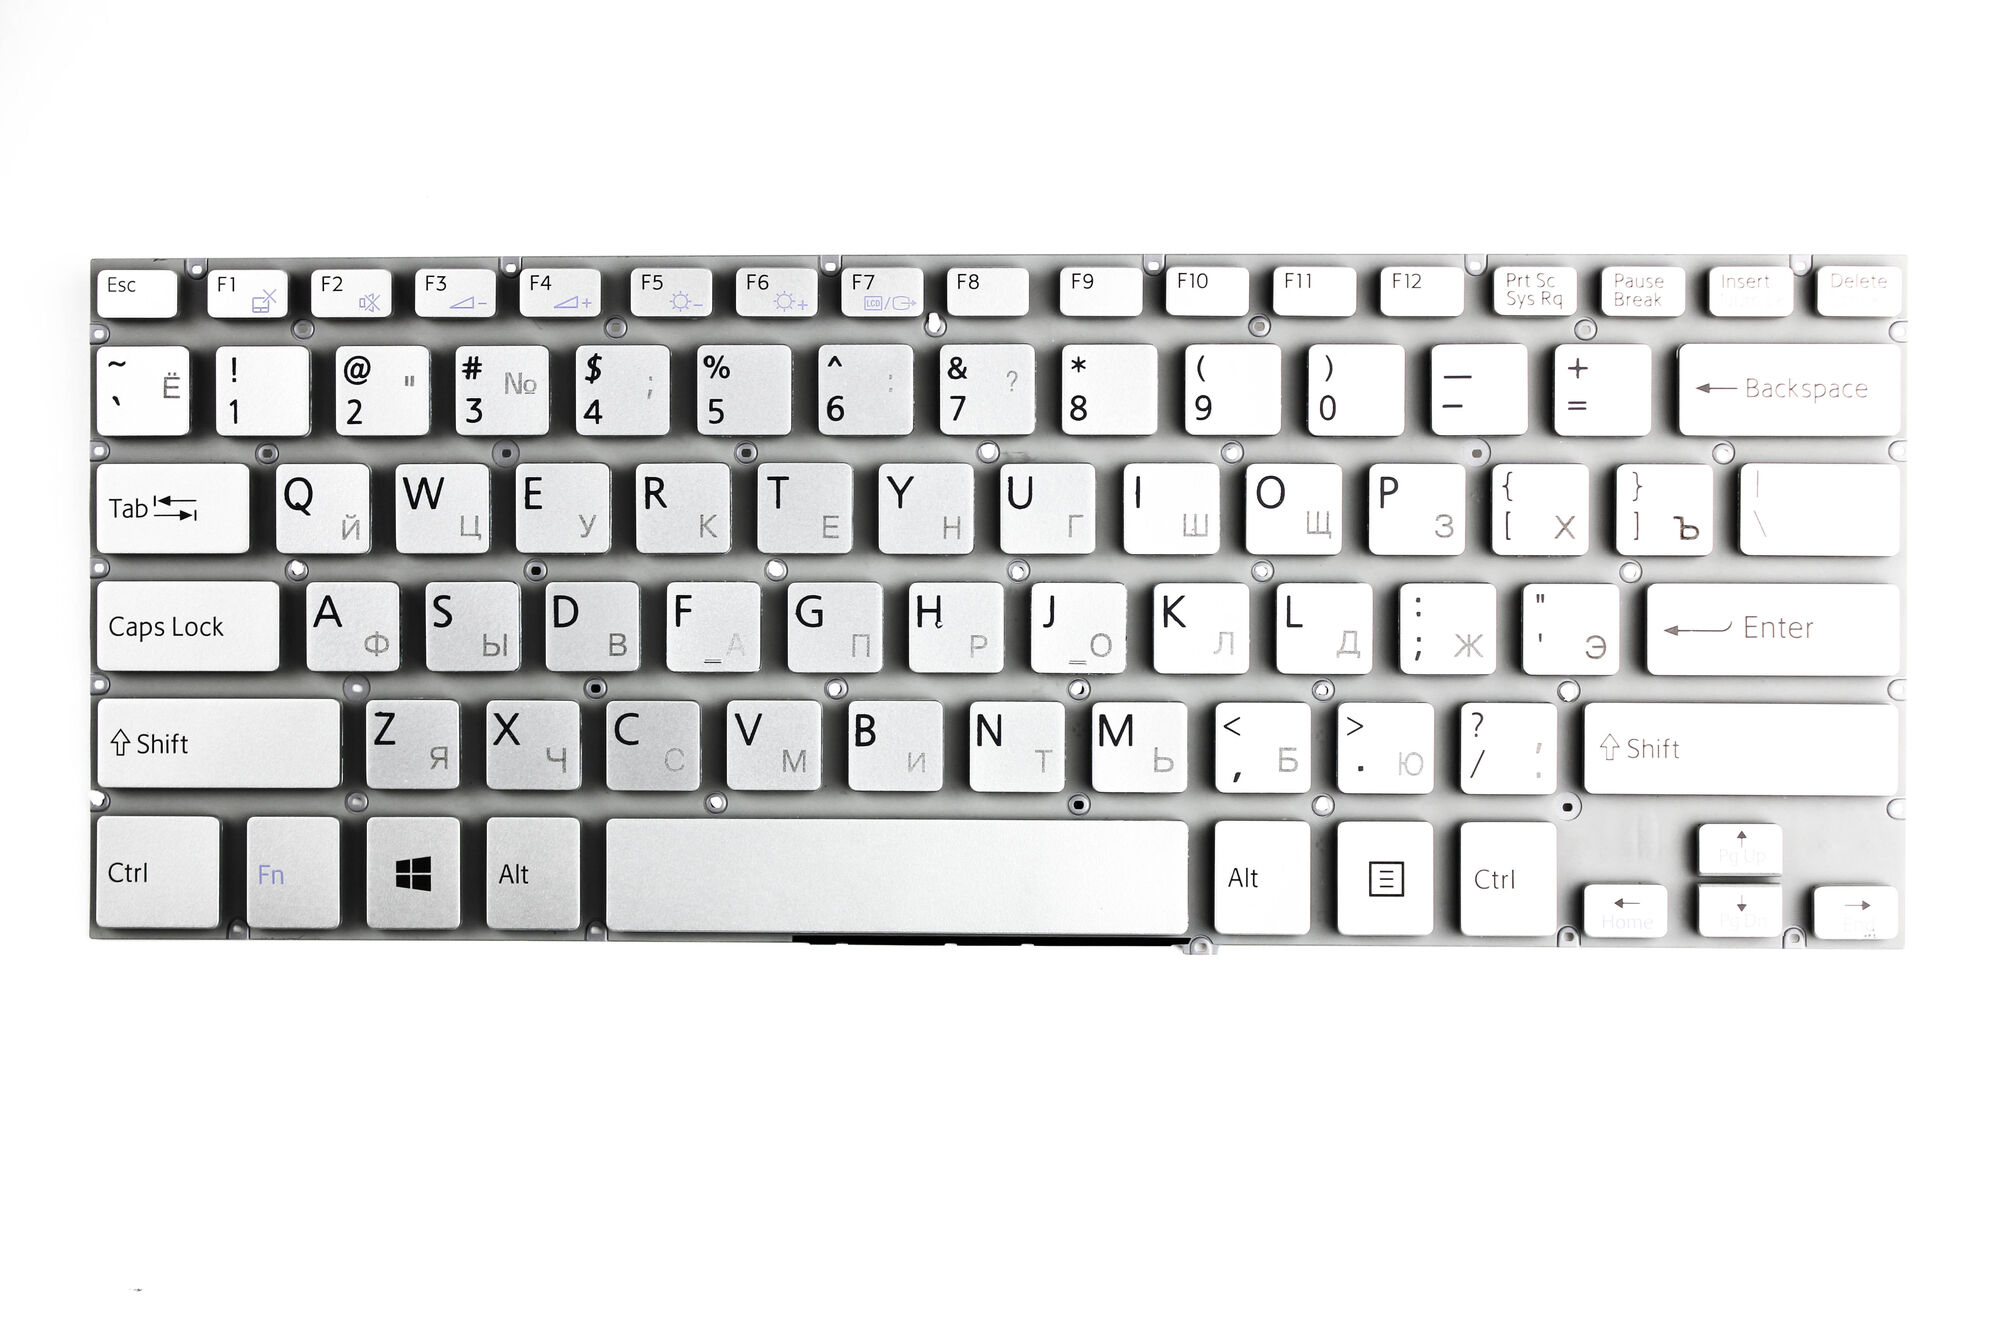 Клавиатура для ноутбука Sony SVF143 cеребро p/n: 149238841KR